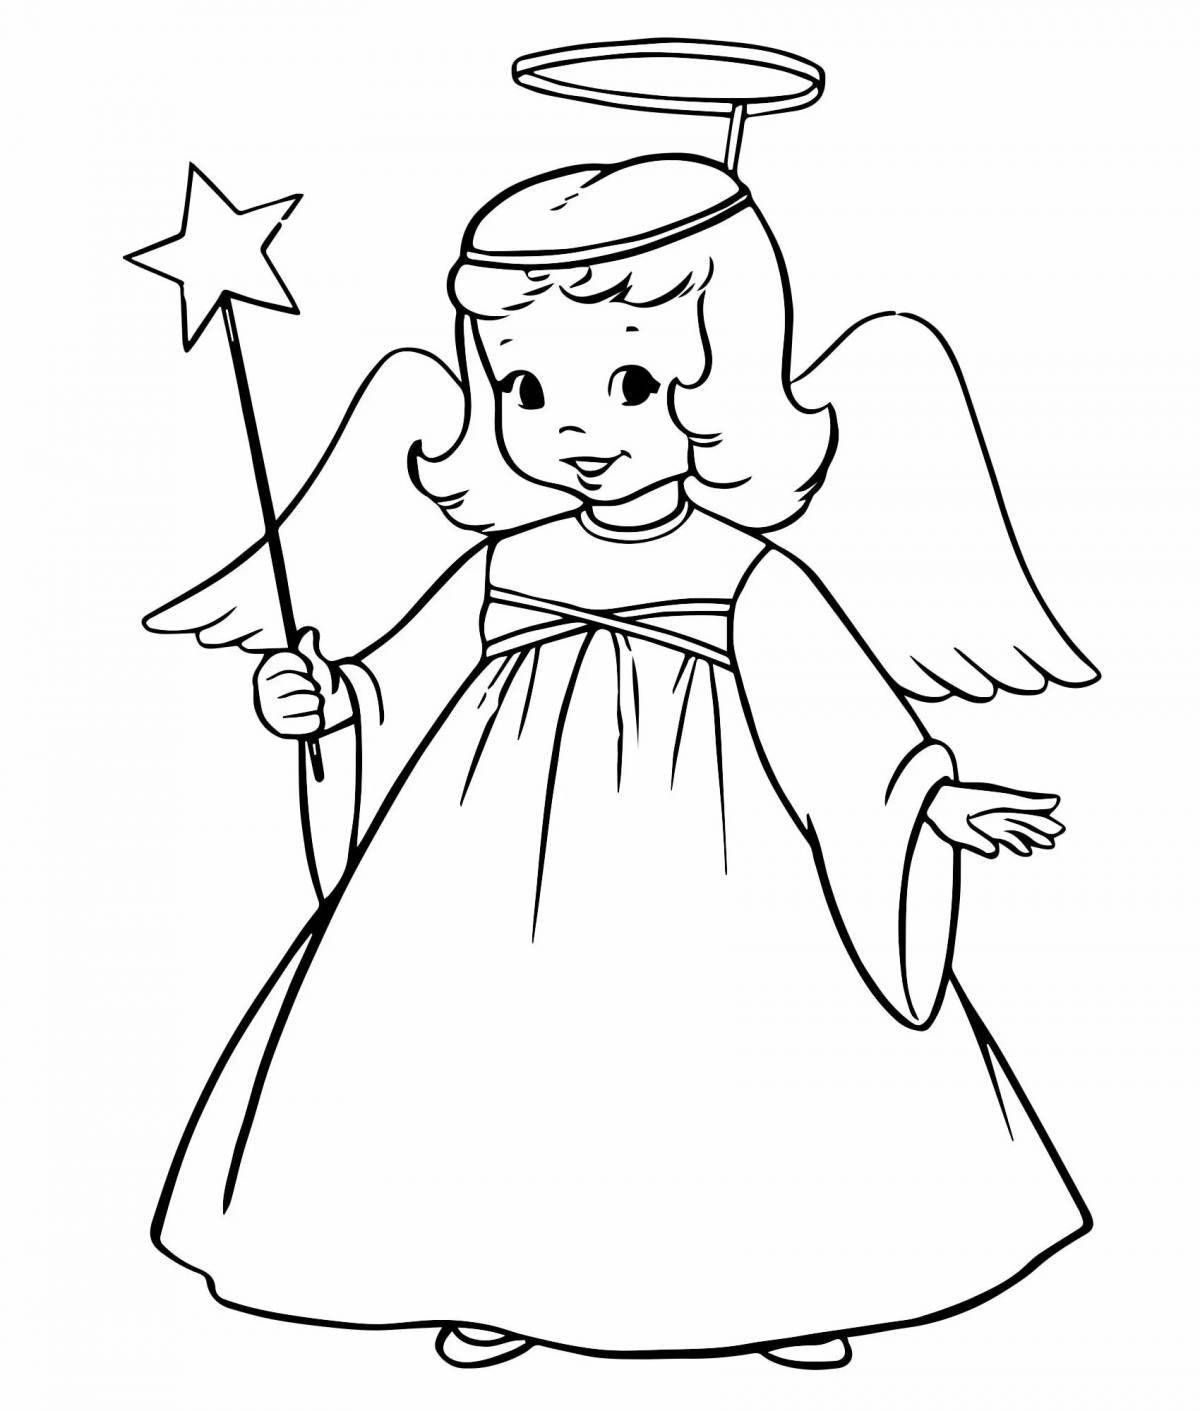 Элегантный ангелочек-раскраска для детей 3-4 лет